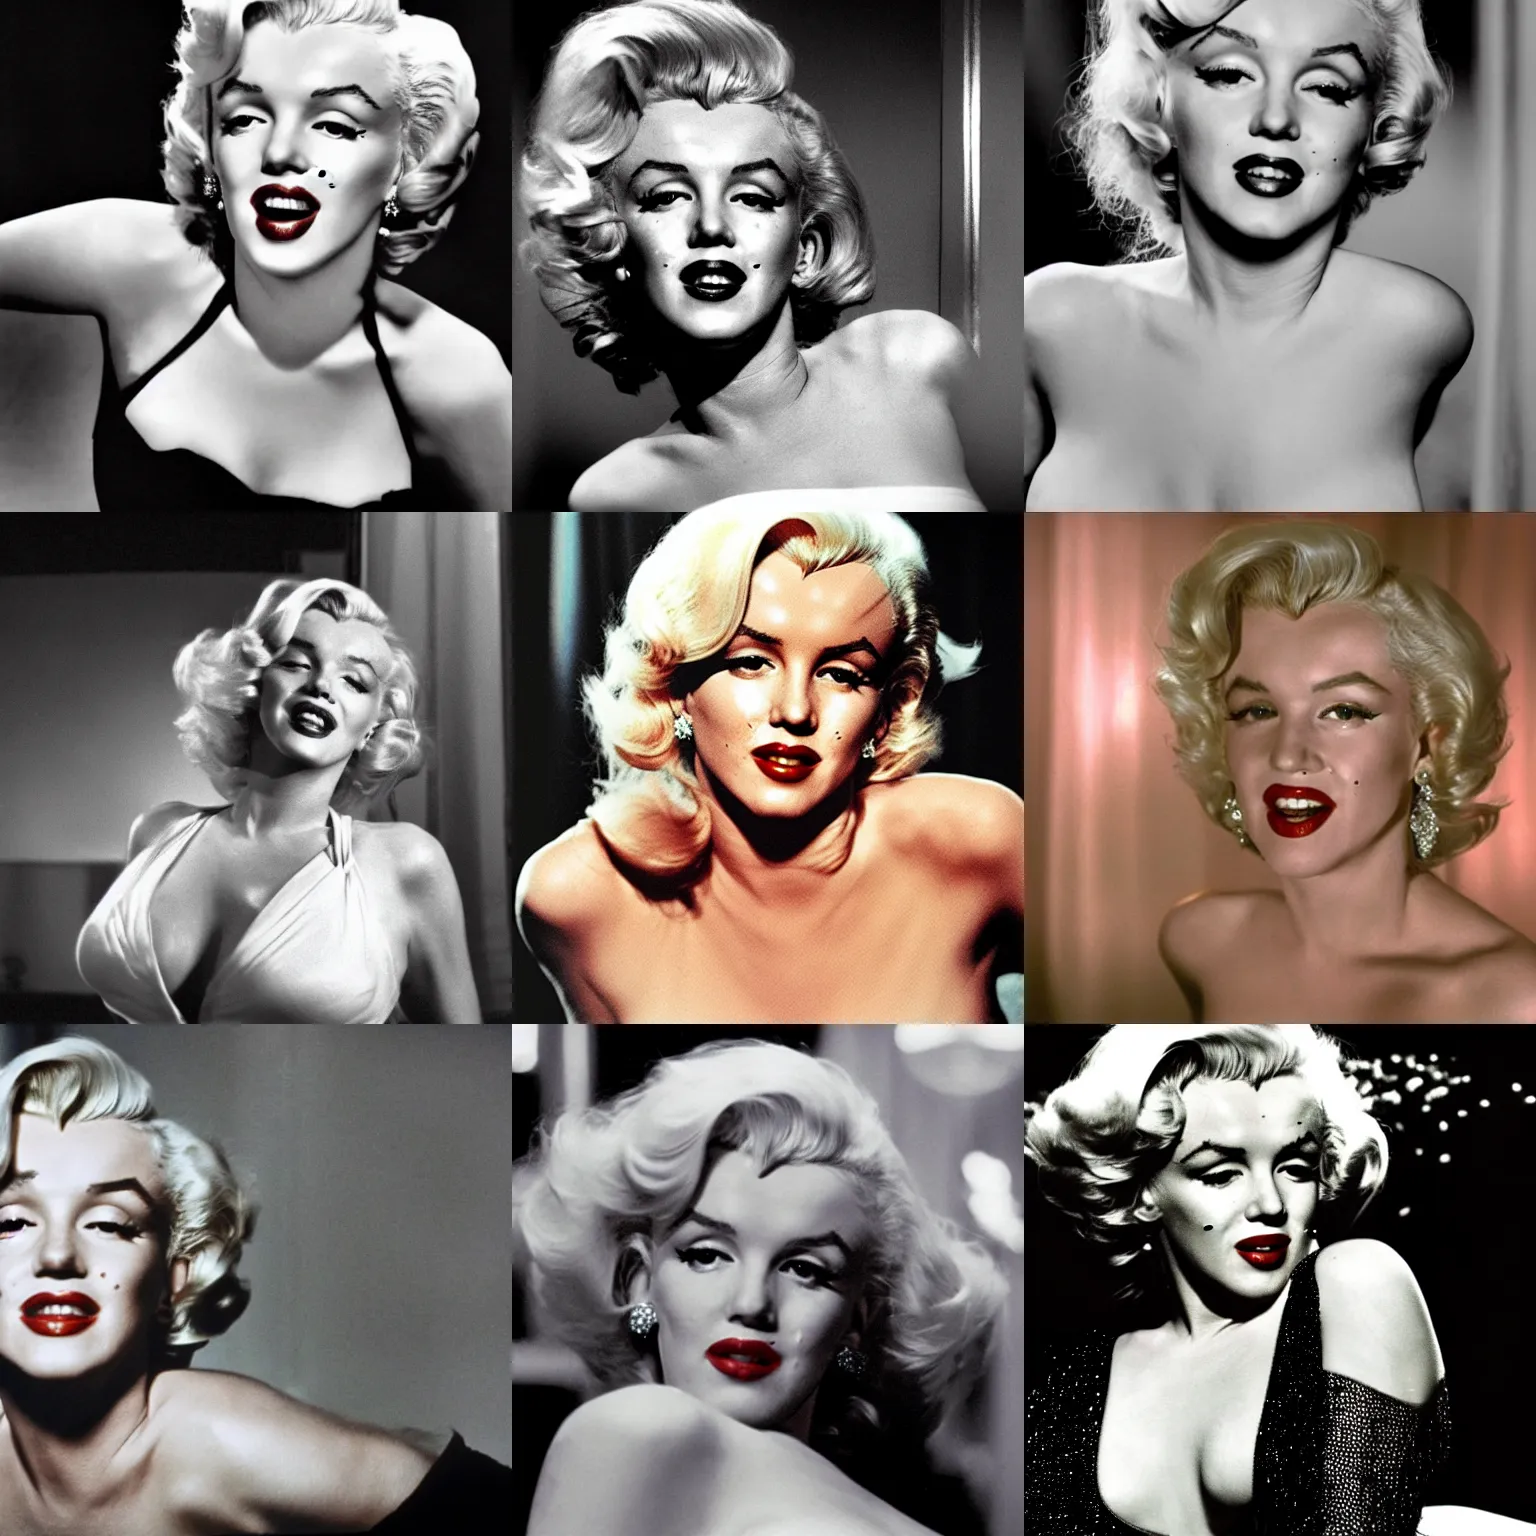 Prompt: Marilyn Monroe in Fenme Fatale by Brian de Palma